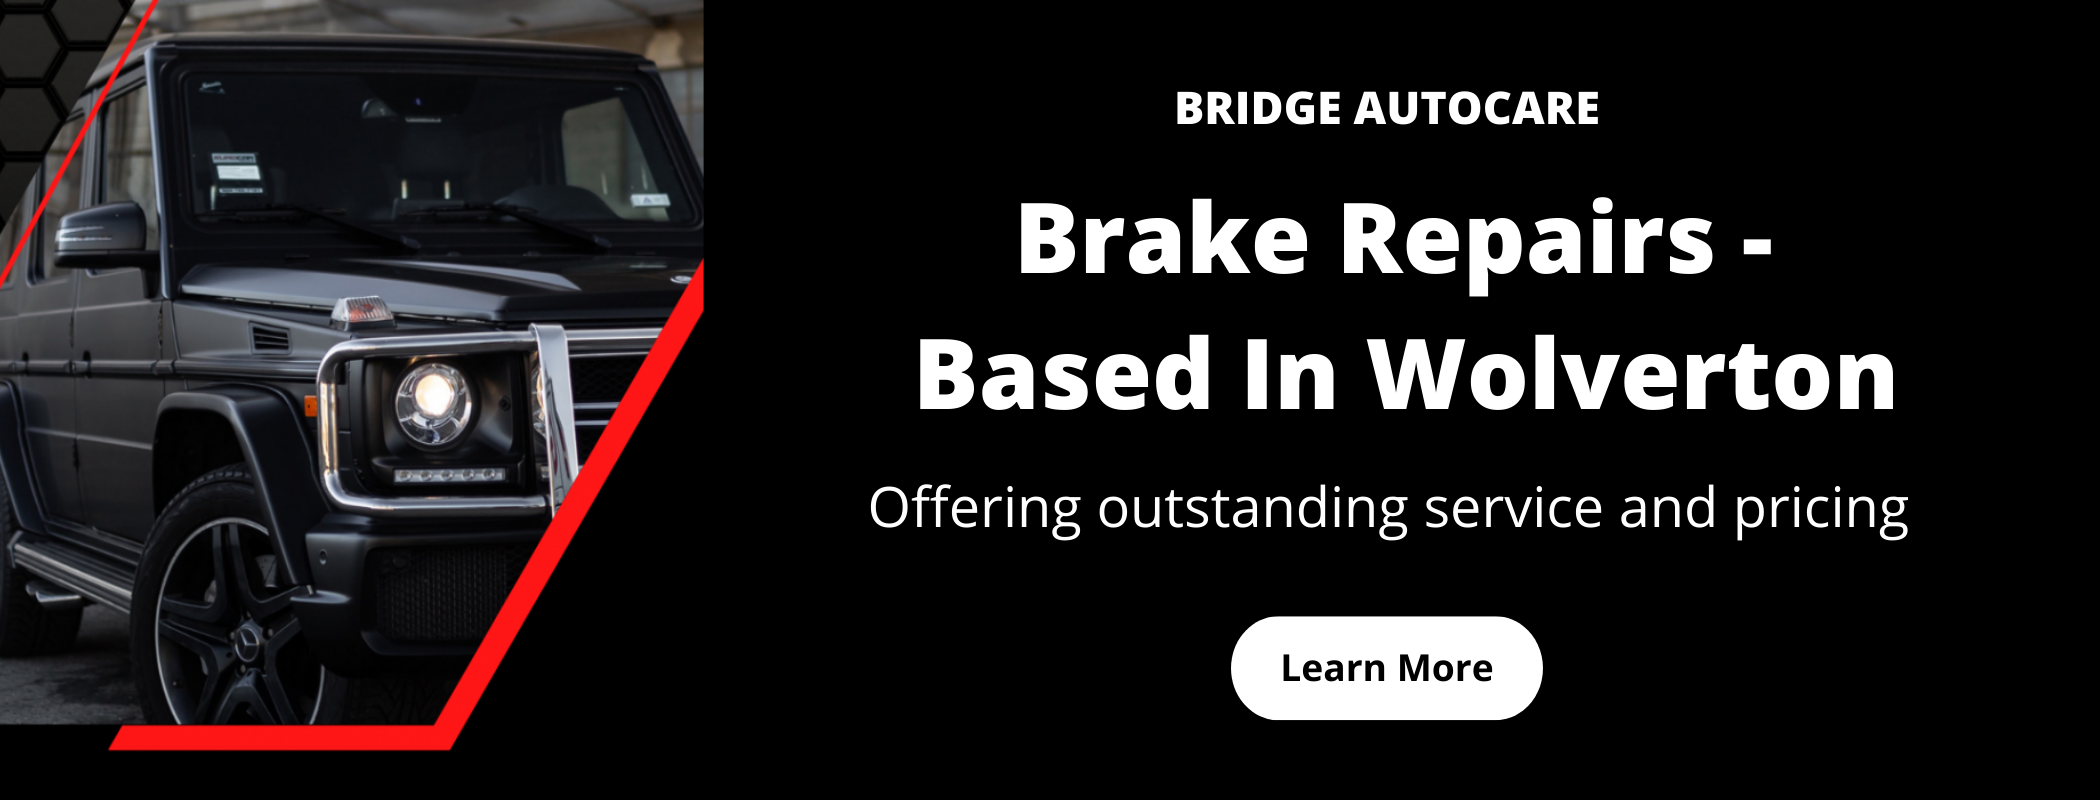 Brake repairs milton keynes